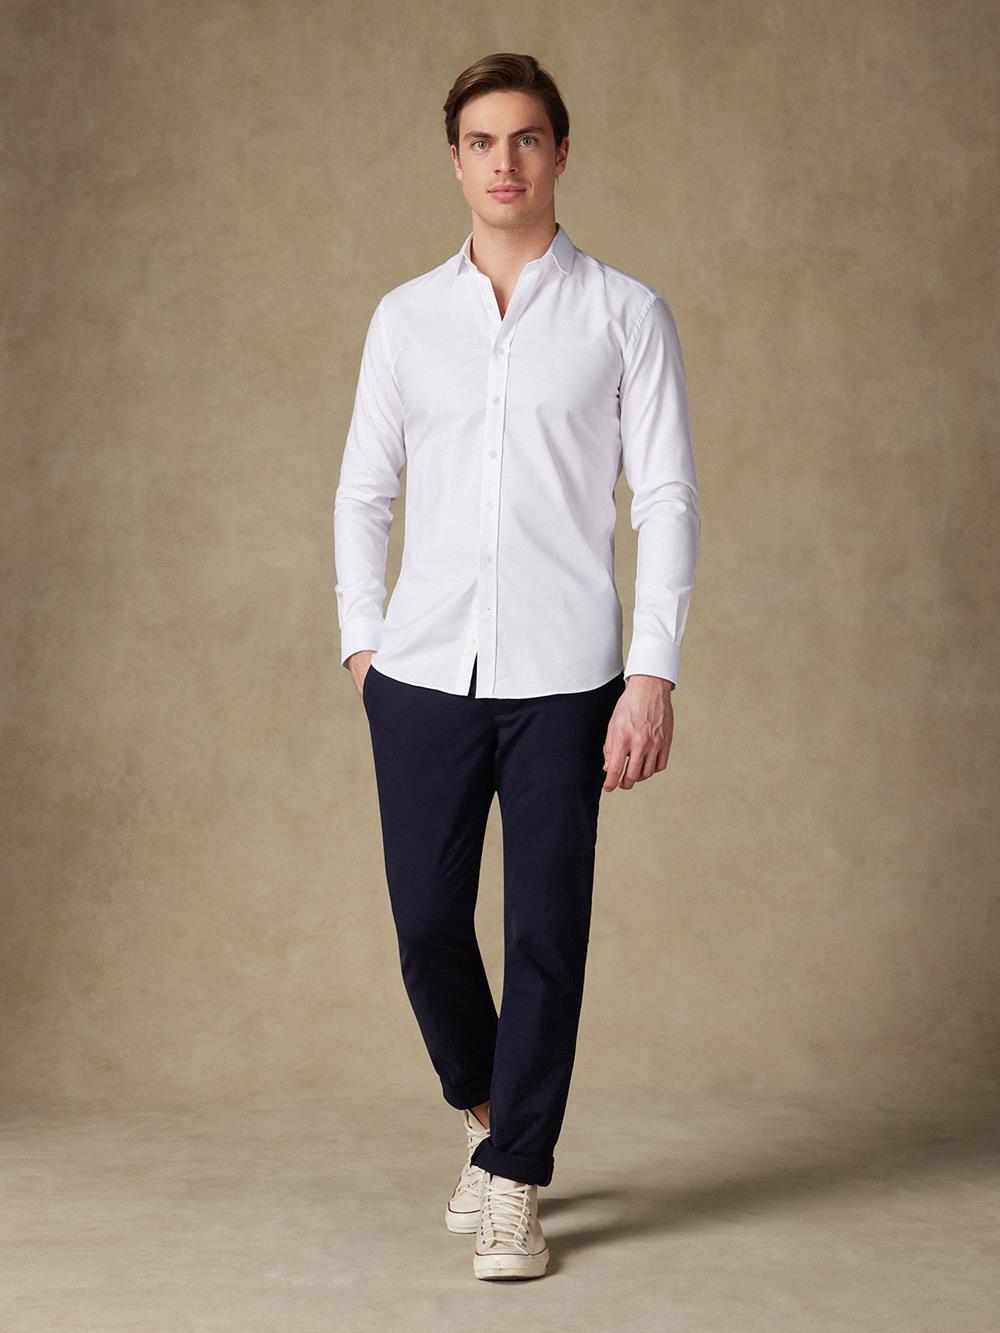 Camisa entallada oxford blanca - Manga Larga